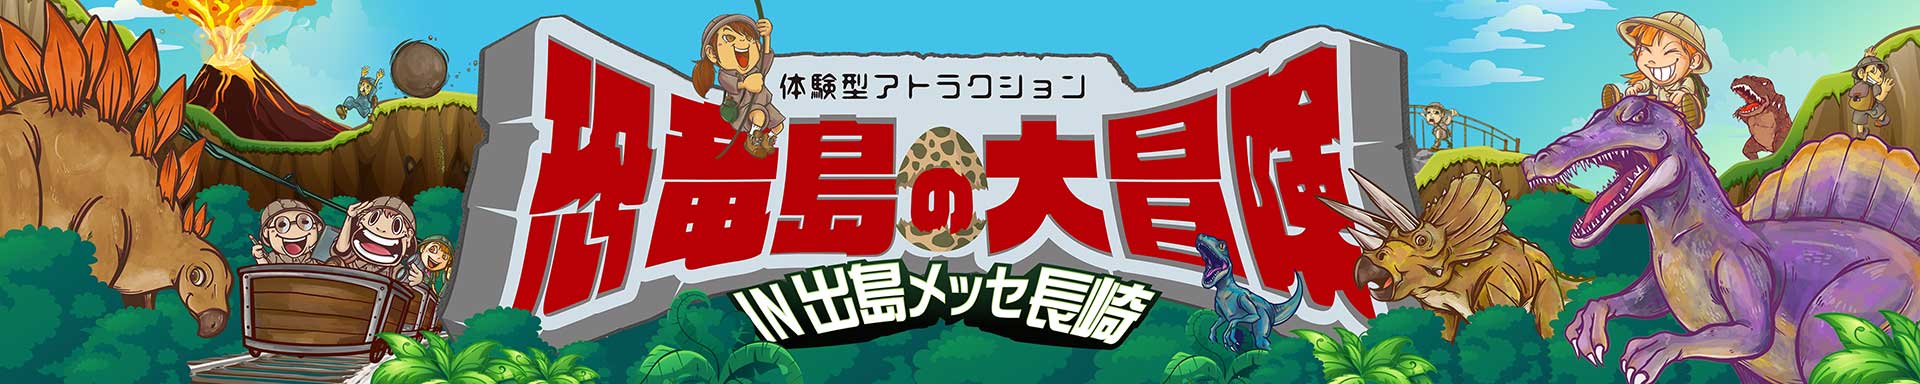 体験型アトラクション 恐竜島の大冒険 in 出島メッセ長崎